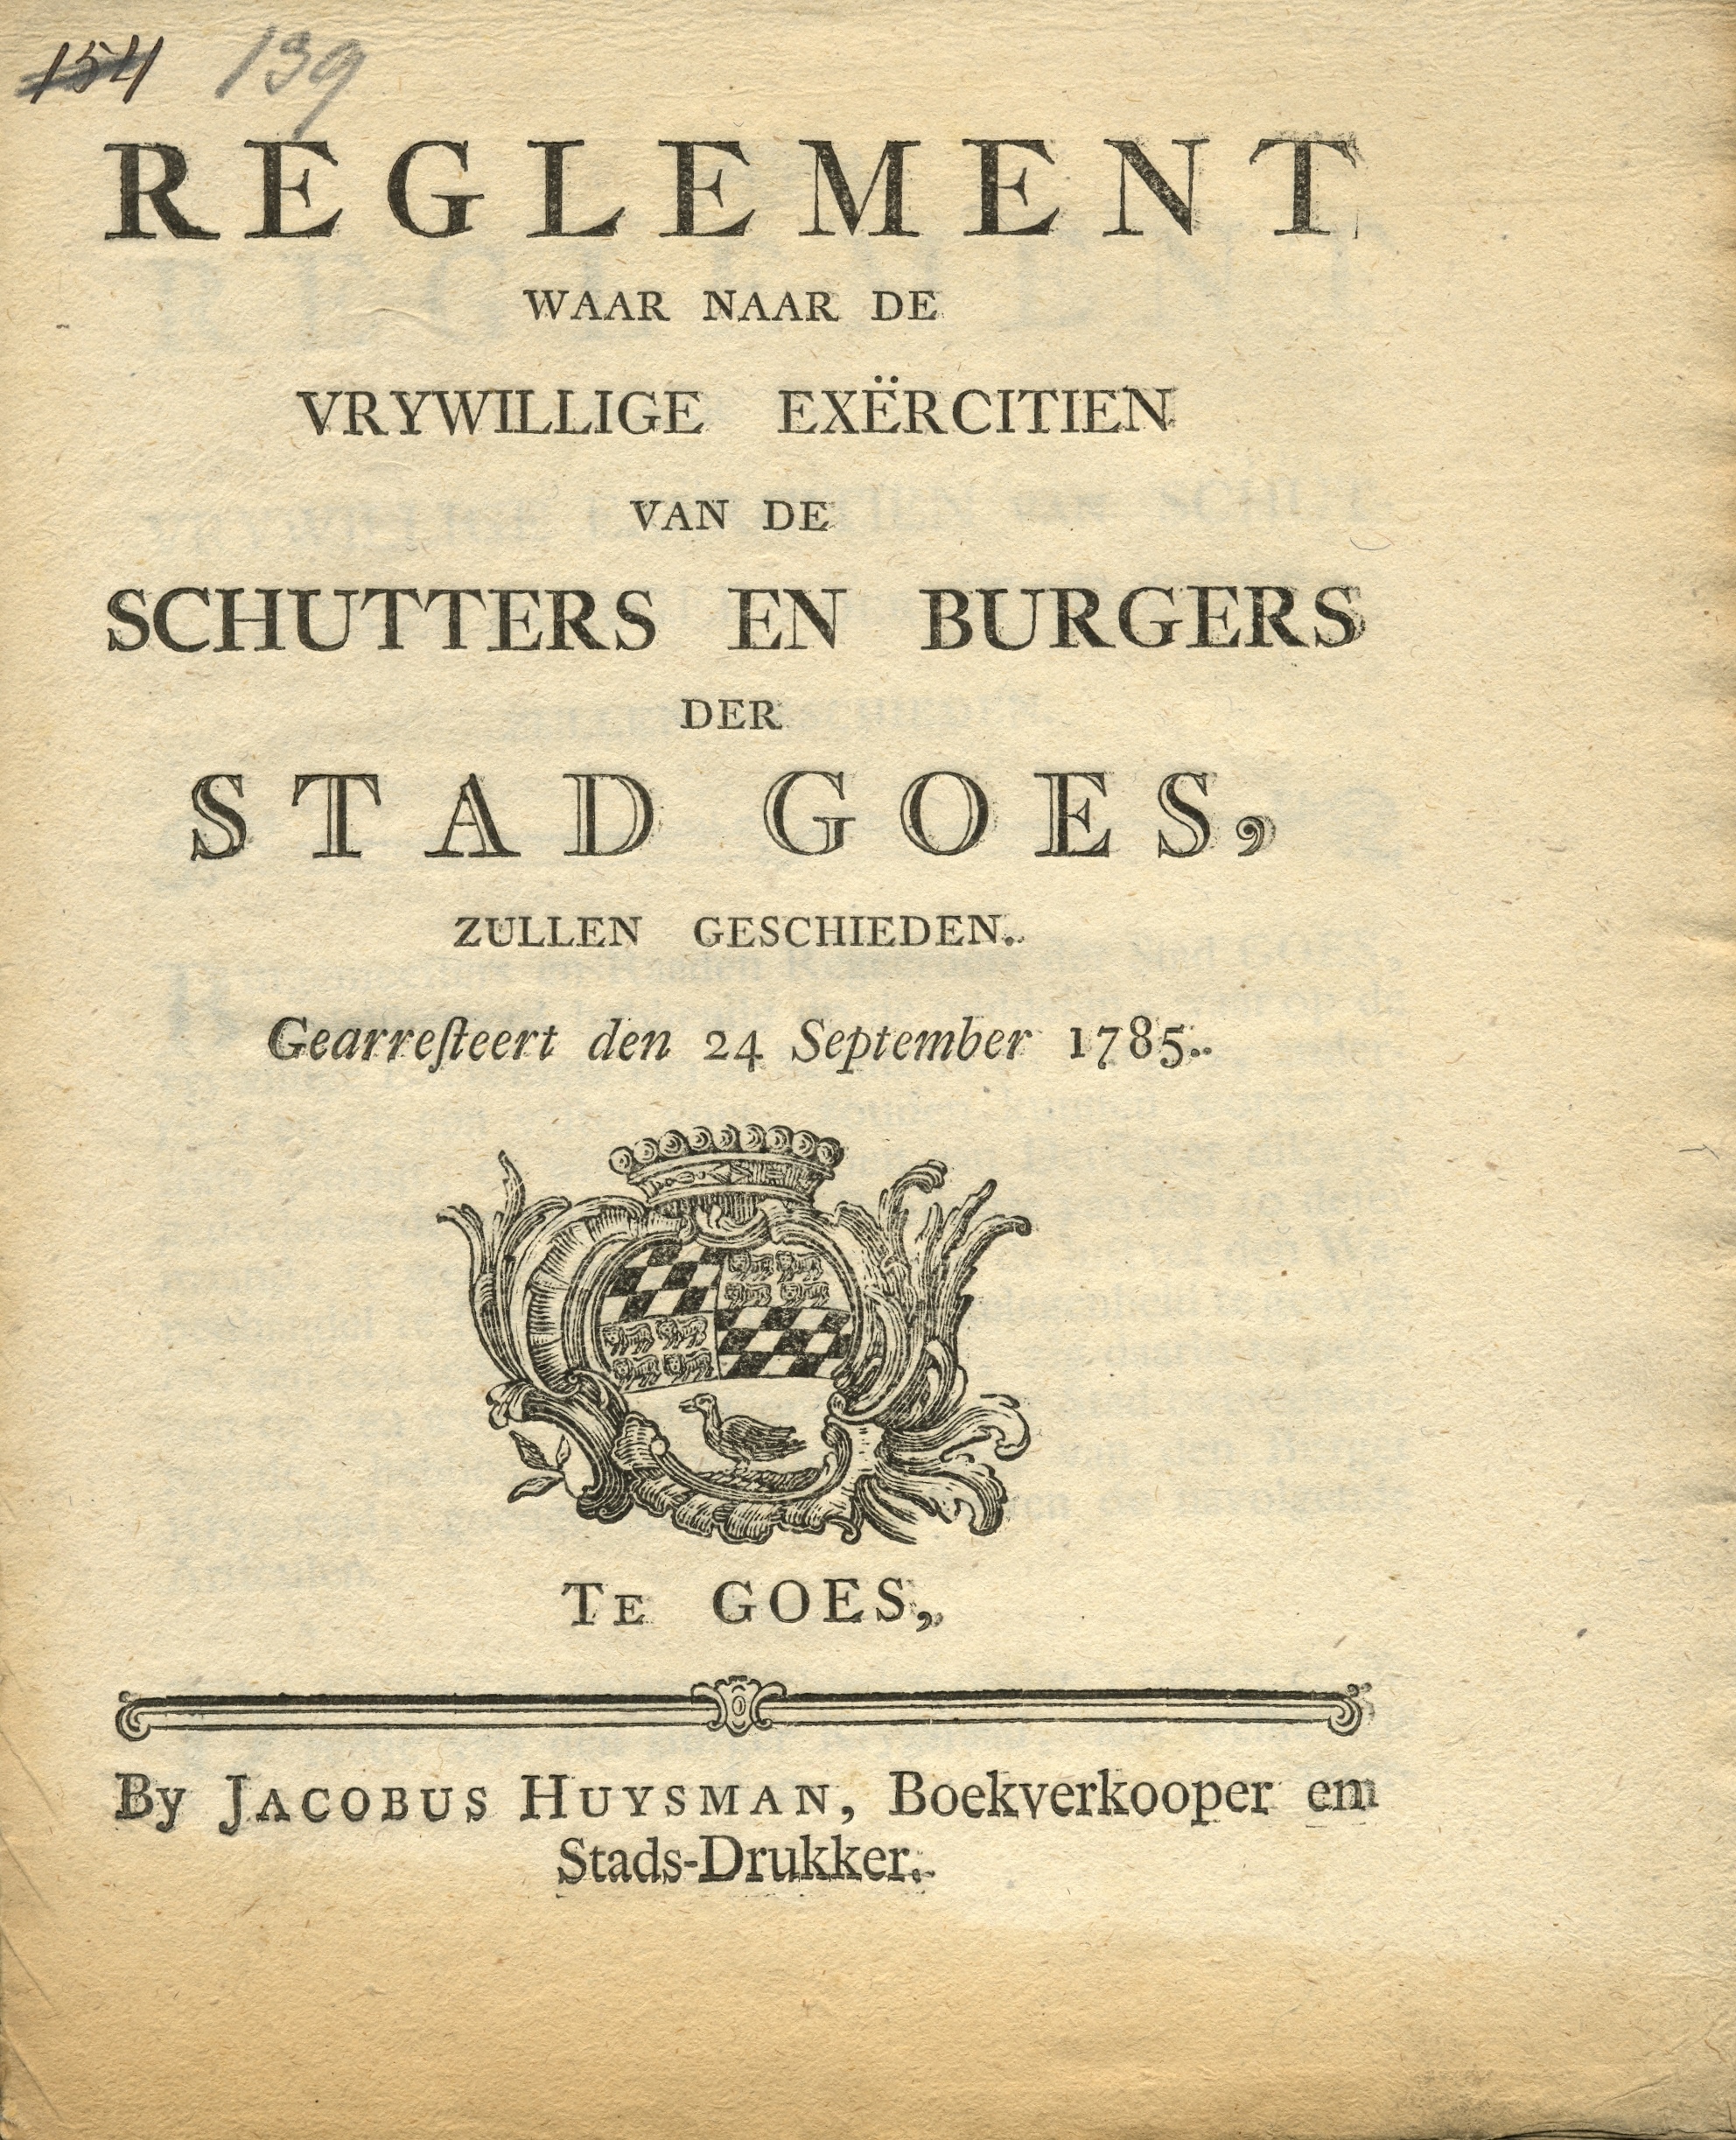 Reglement voor het houden van vrijwillige exercitien, 1785.